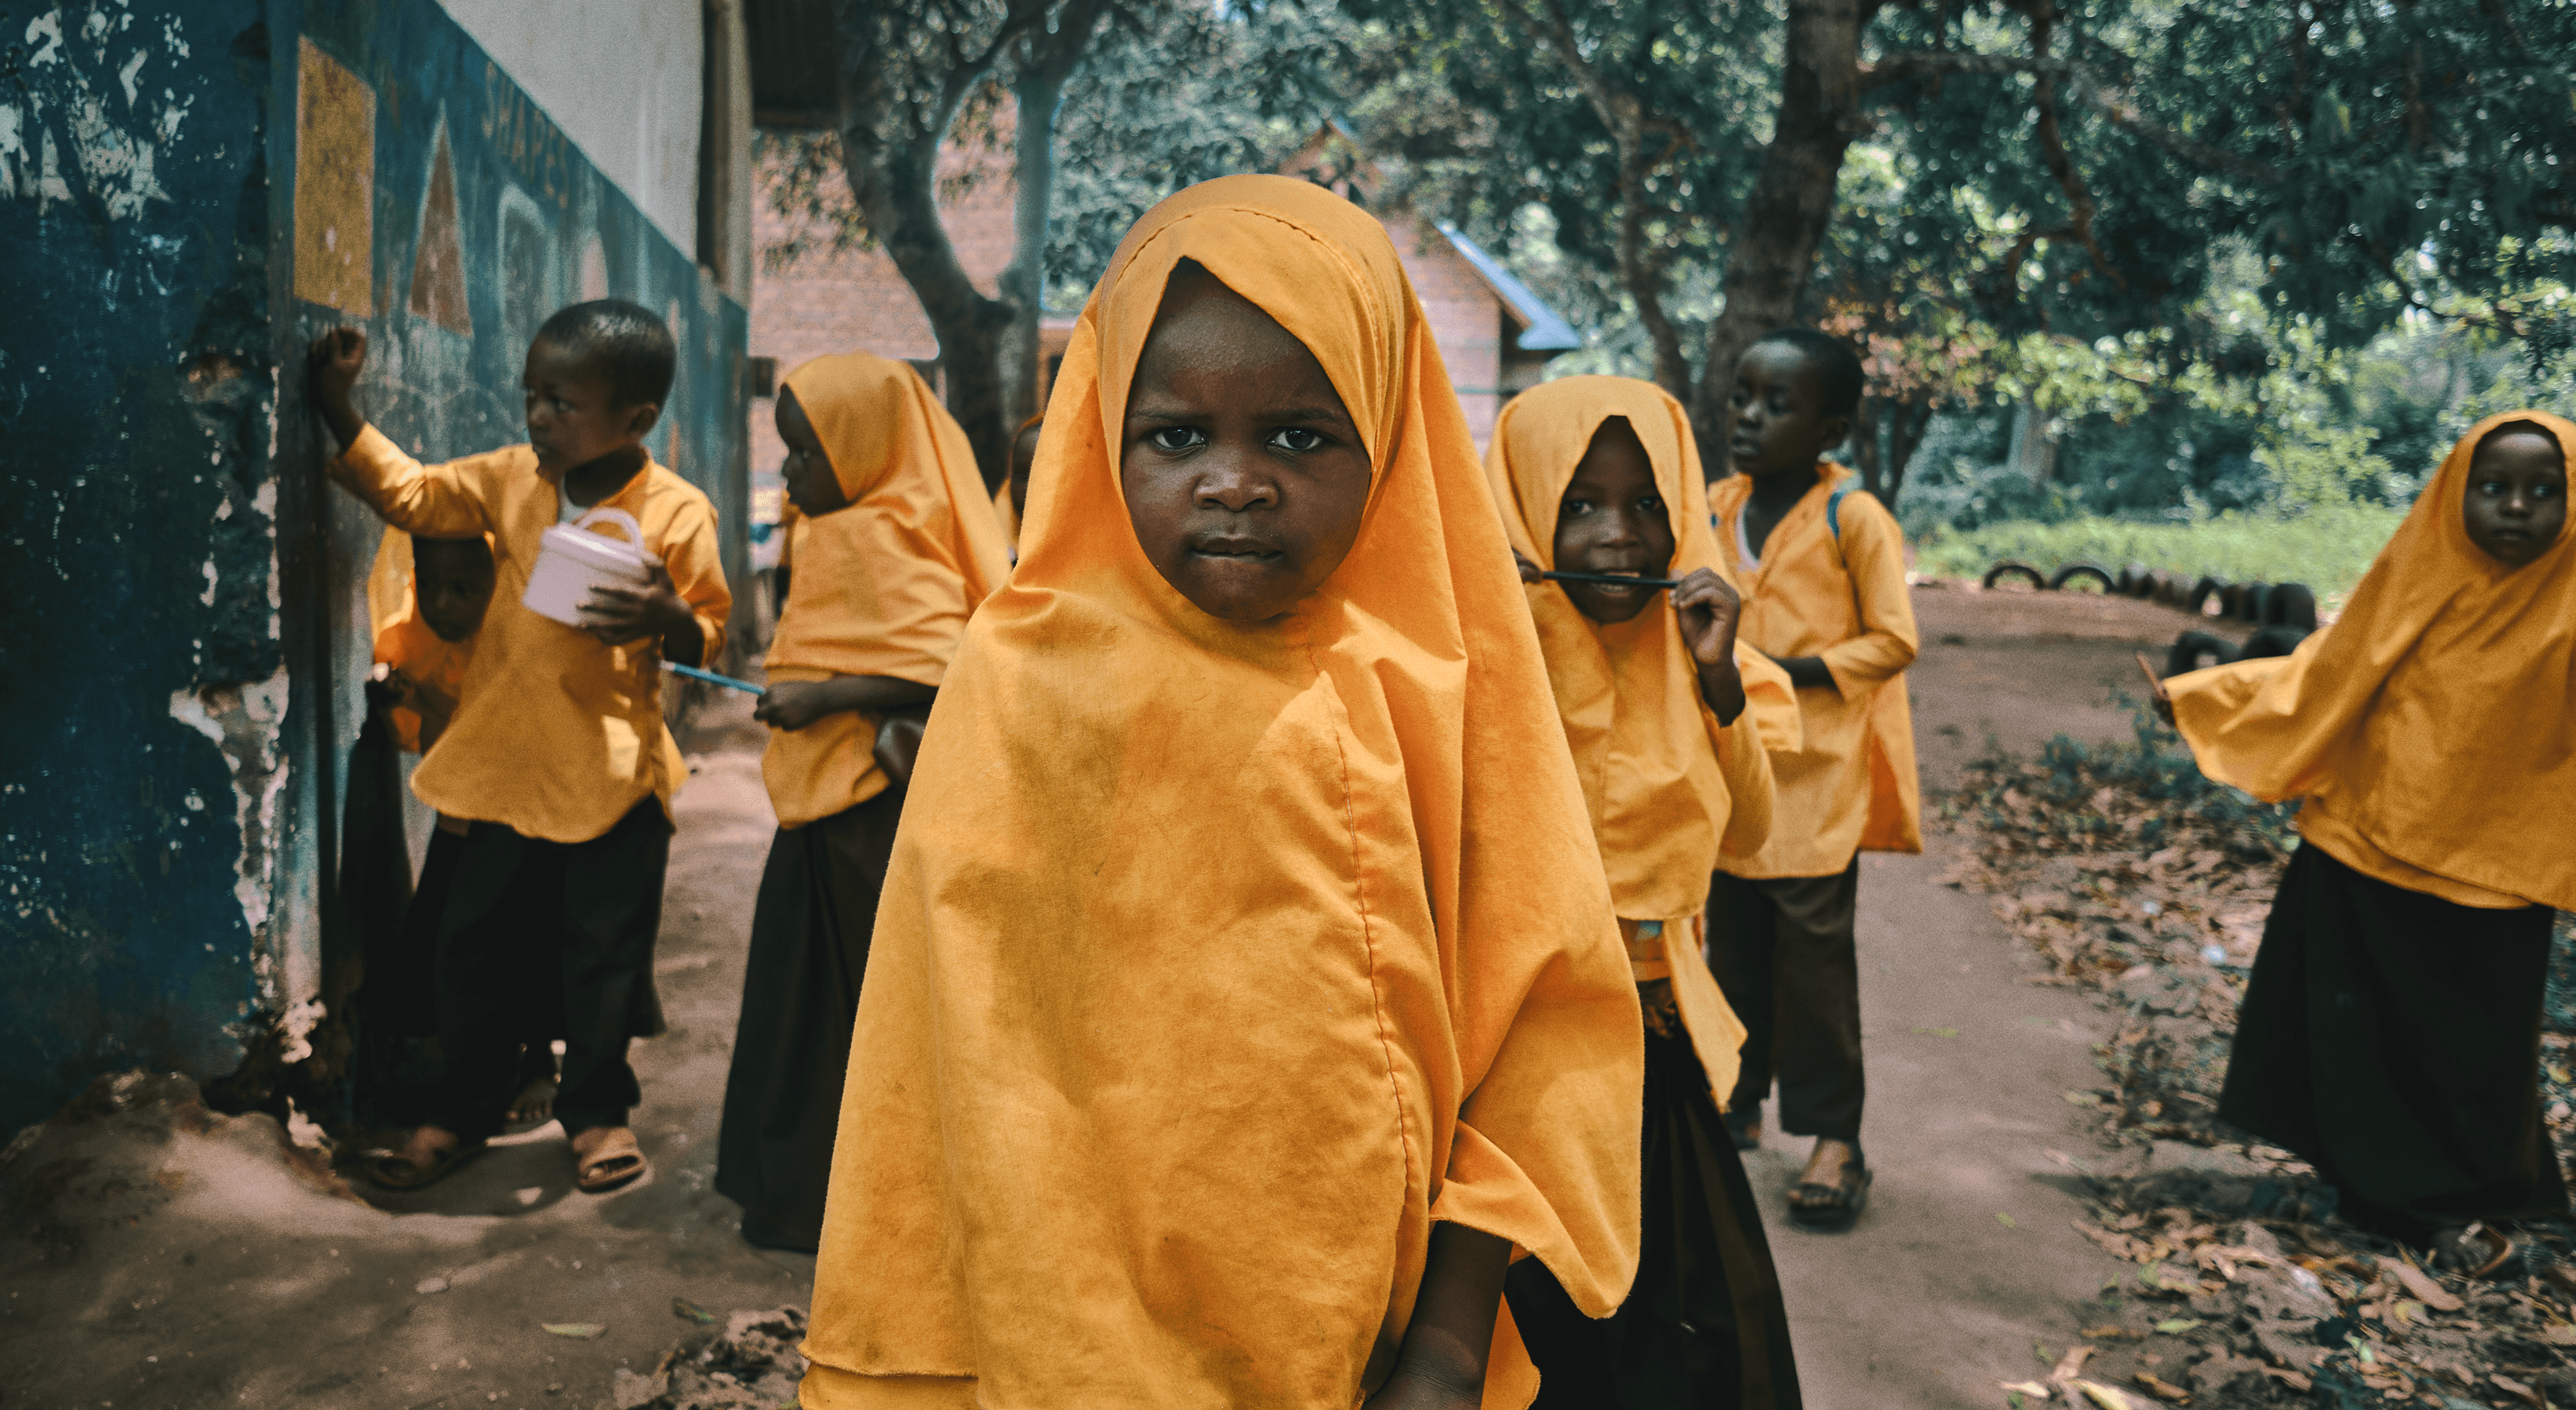 One year of "Zanzibar's Kids" / 365